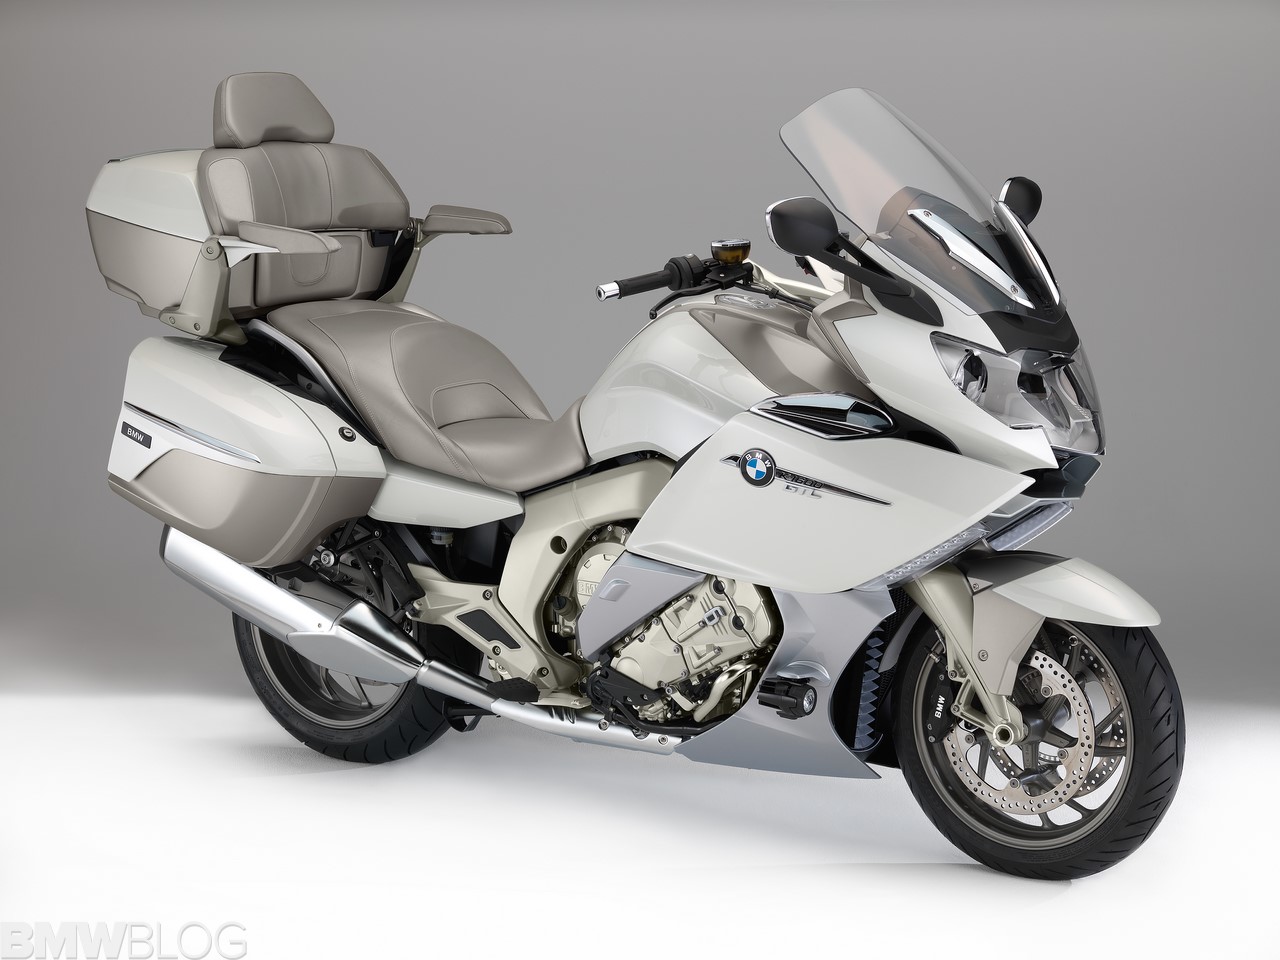 Operation Motorrad A Dad gets a surprising gift BMW K1600 GTL